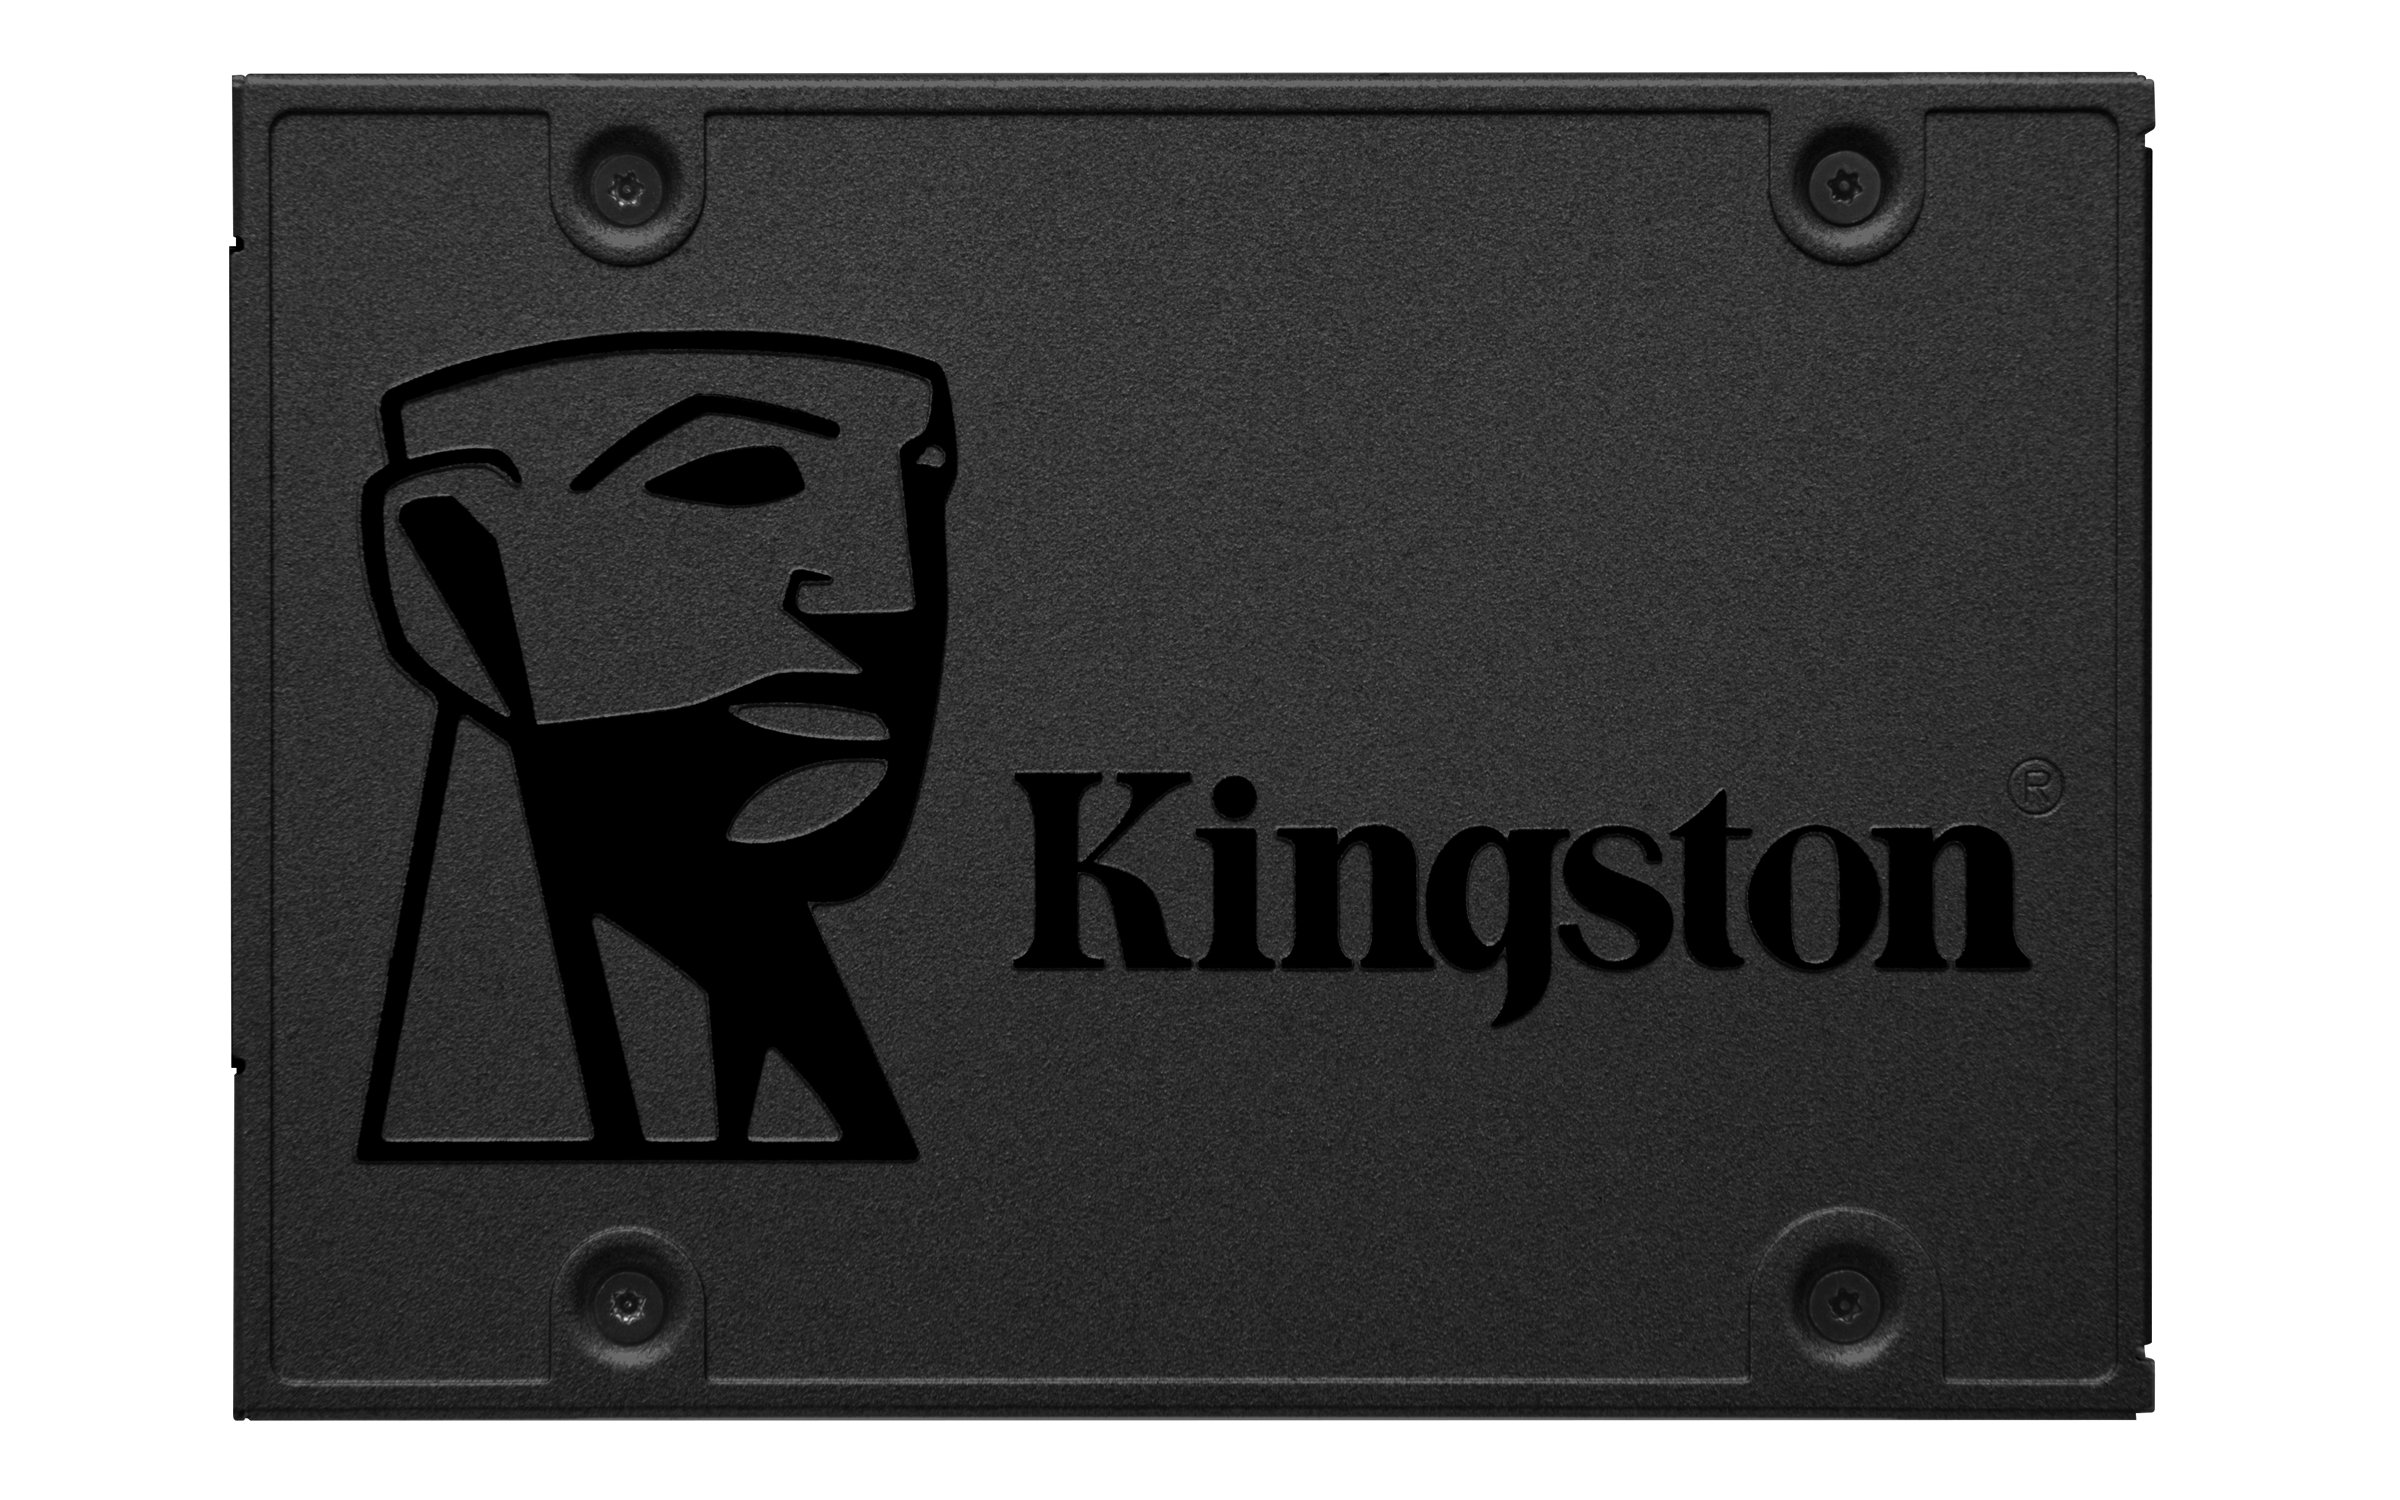 Amazon: Kingston 480GB A400 SATA 3 2.5" Internal SSD $31.49 + Free Shipping w/ Prime